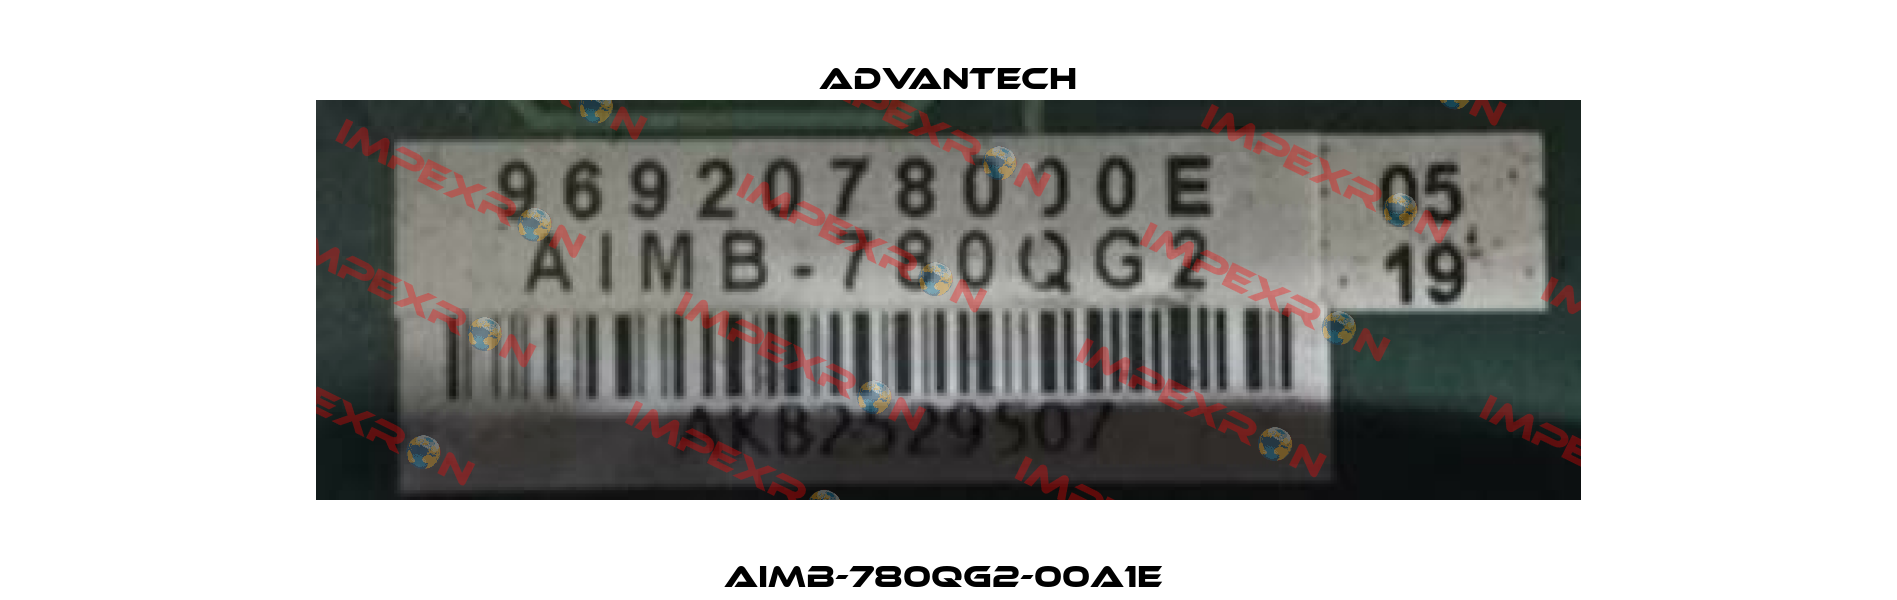 AIMB-780QG2-00A1E  Advantech